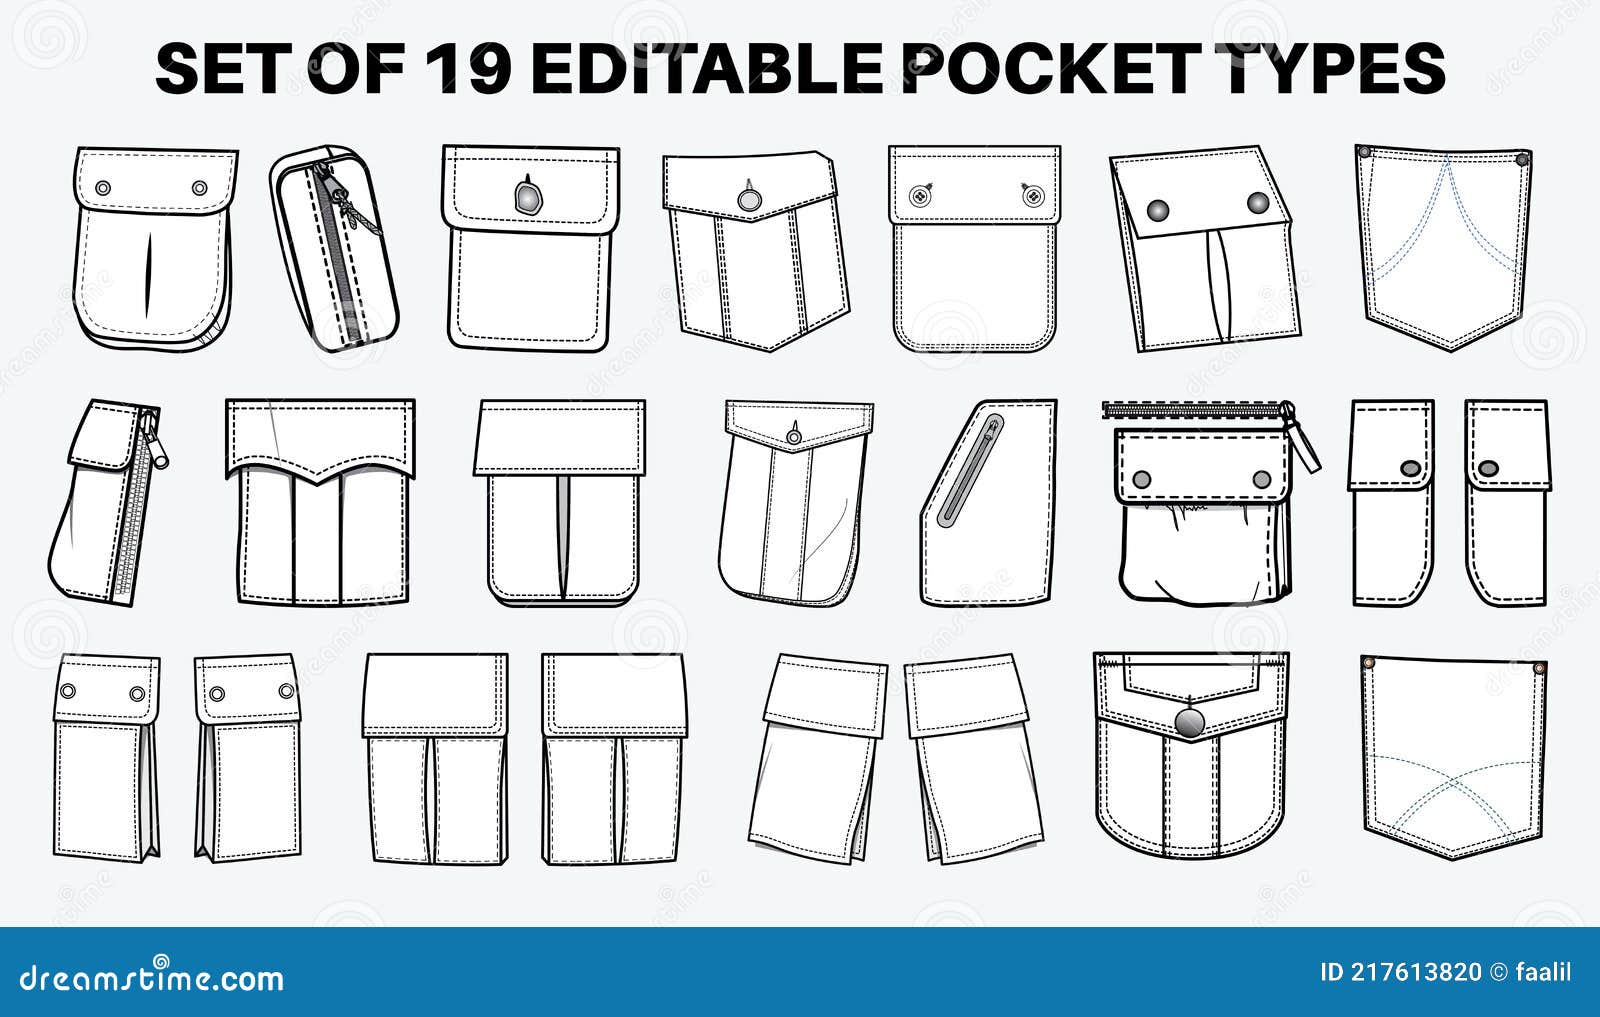 Denim Pocket Vector PNG Images, Denim Coat Pocket Style Drawing, Denim  Jacket, Pocket, Collection Figure PNG Image For Free Download